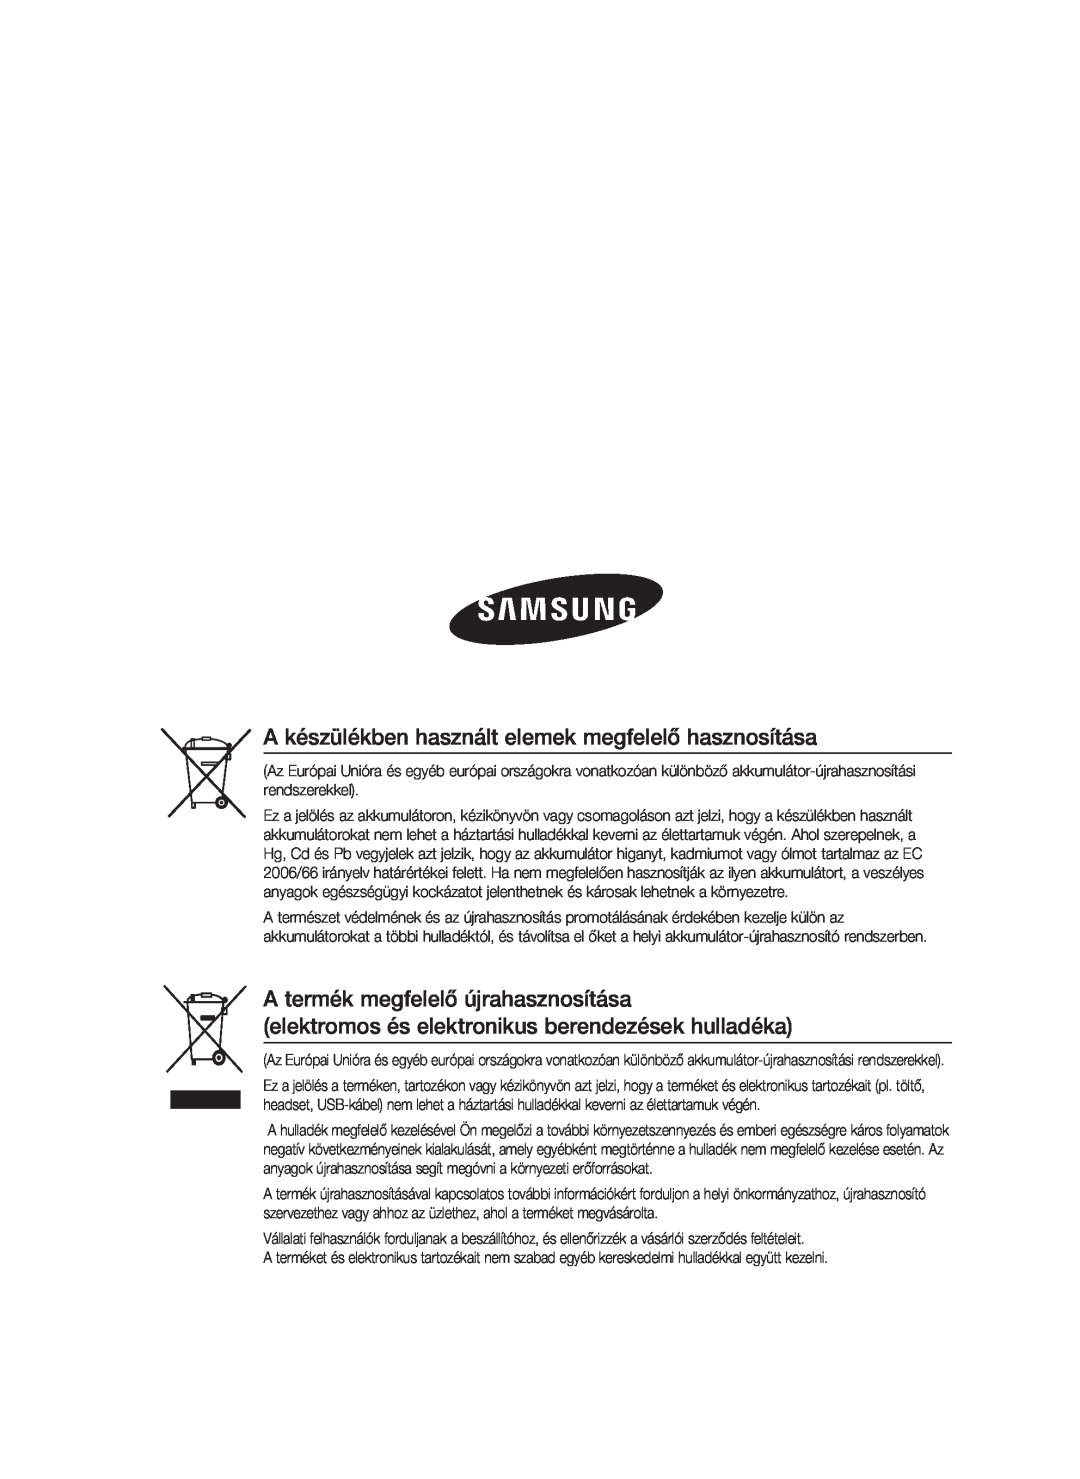 Samsung HT-C5900/XEE manual A készülékben használt elemek megfelelő hasznosítása, A termék megfelelő újrahasznosítása 